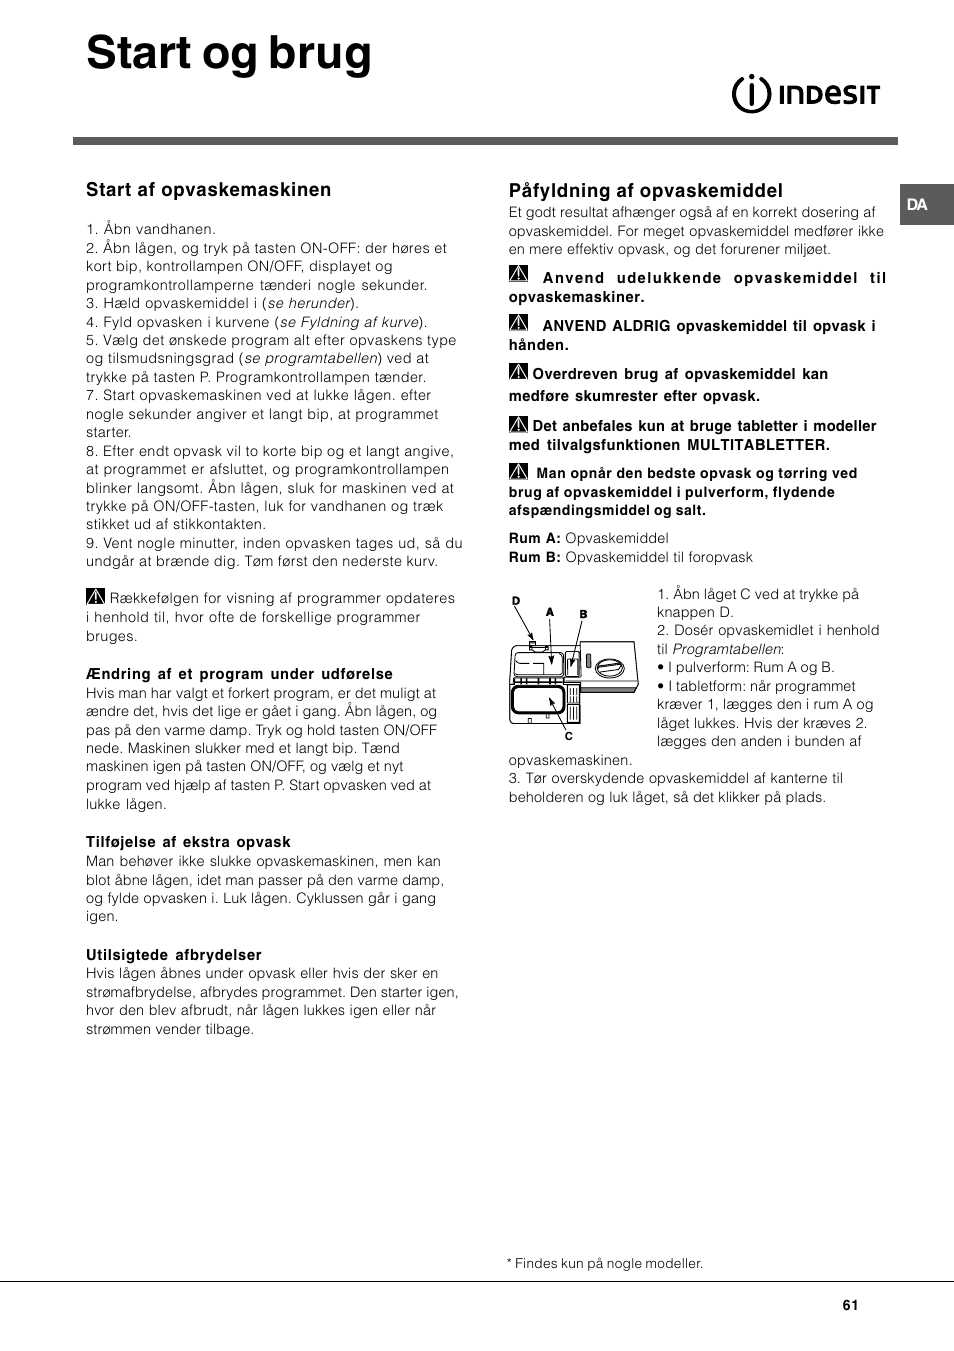 Start og brug, Påfyldning af opvaskemiddel, Start af opvaskemaskinen |  Indesit DIF-26-A User Manual | Page 61 / 80